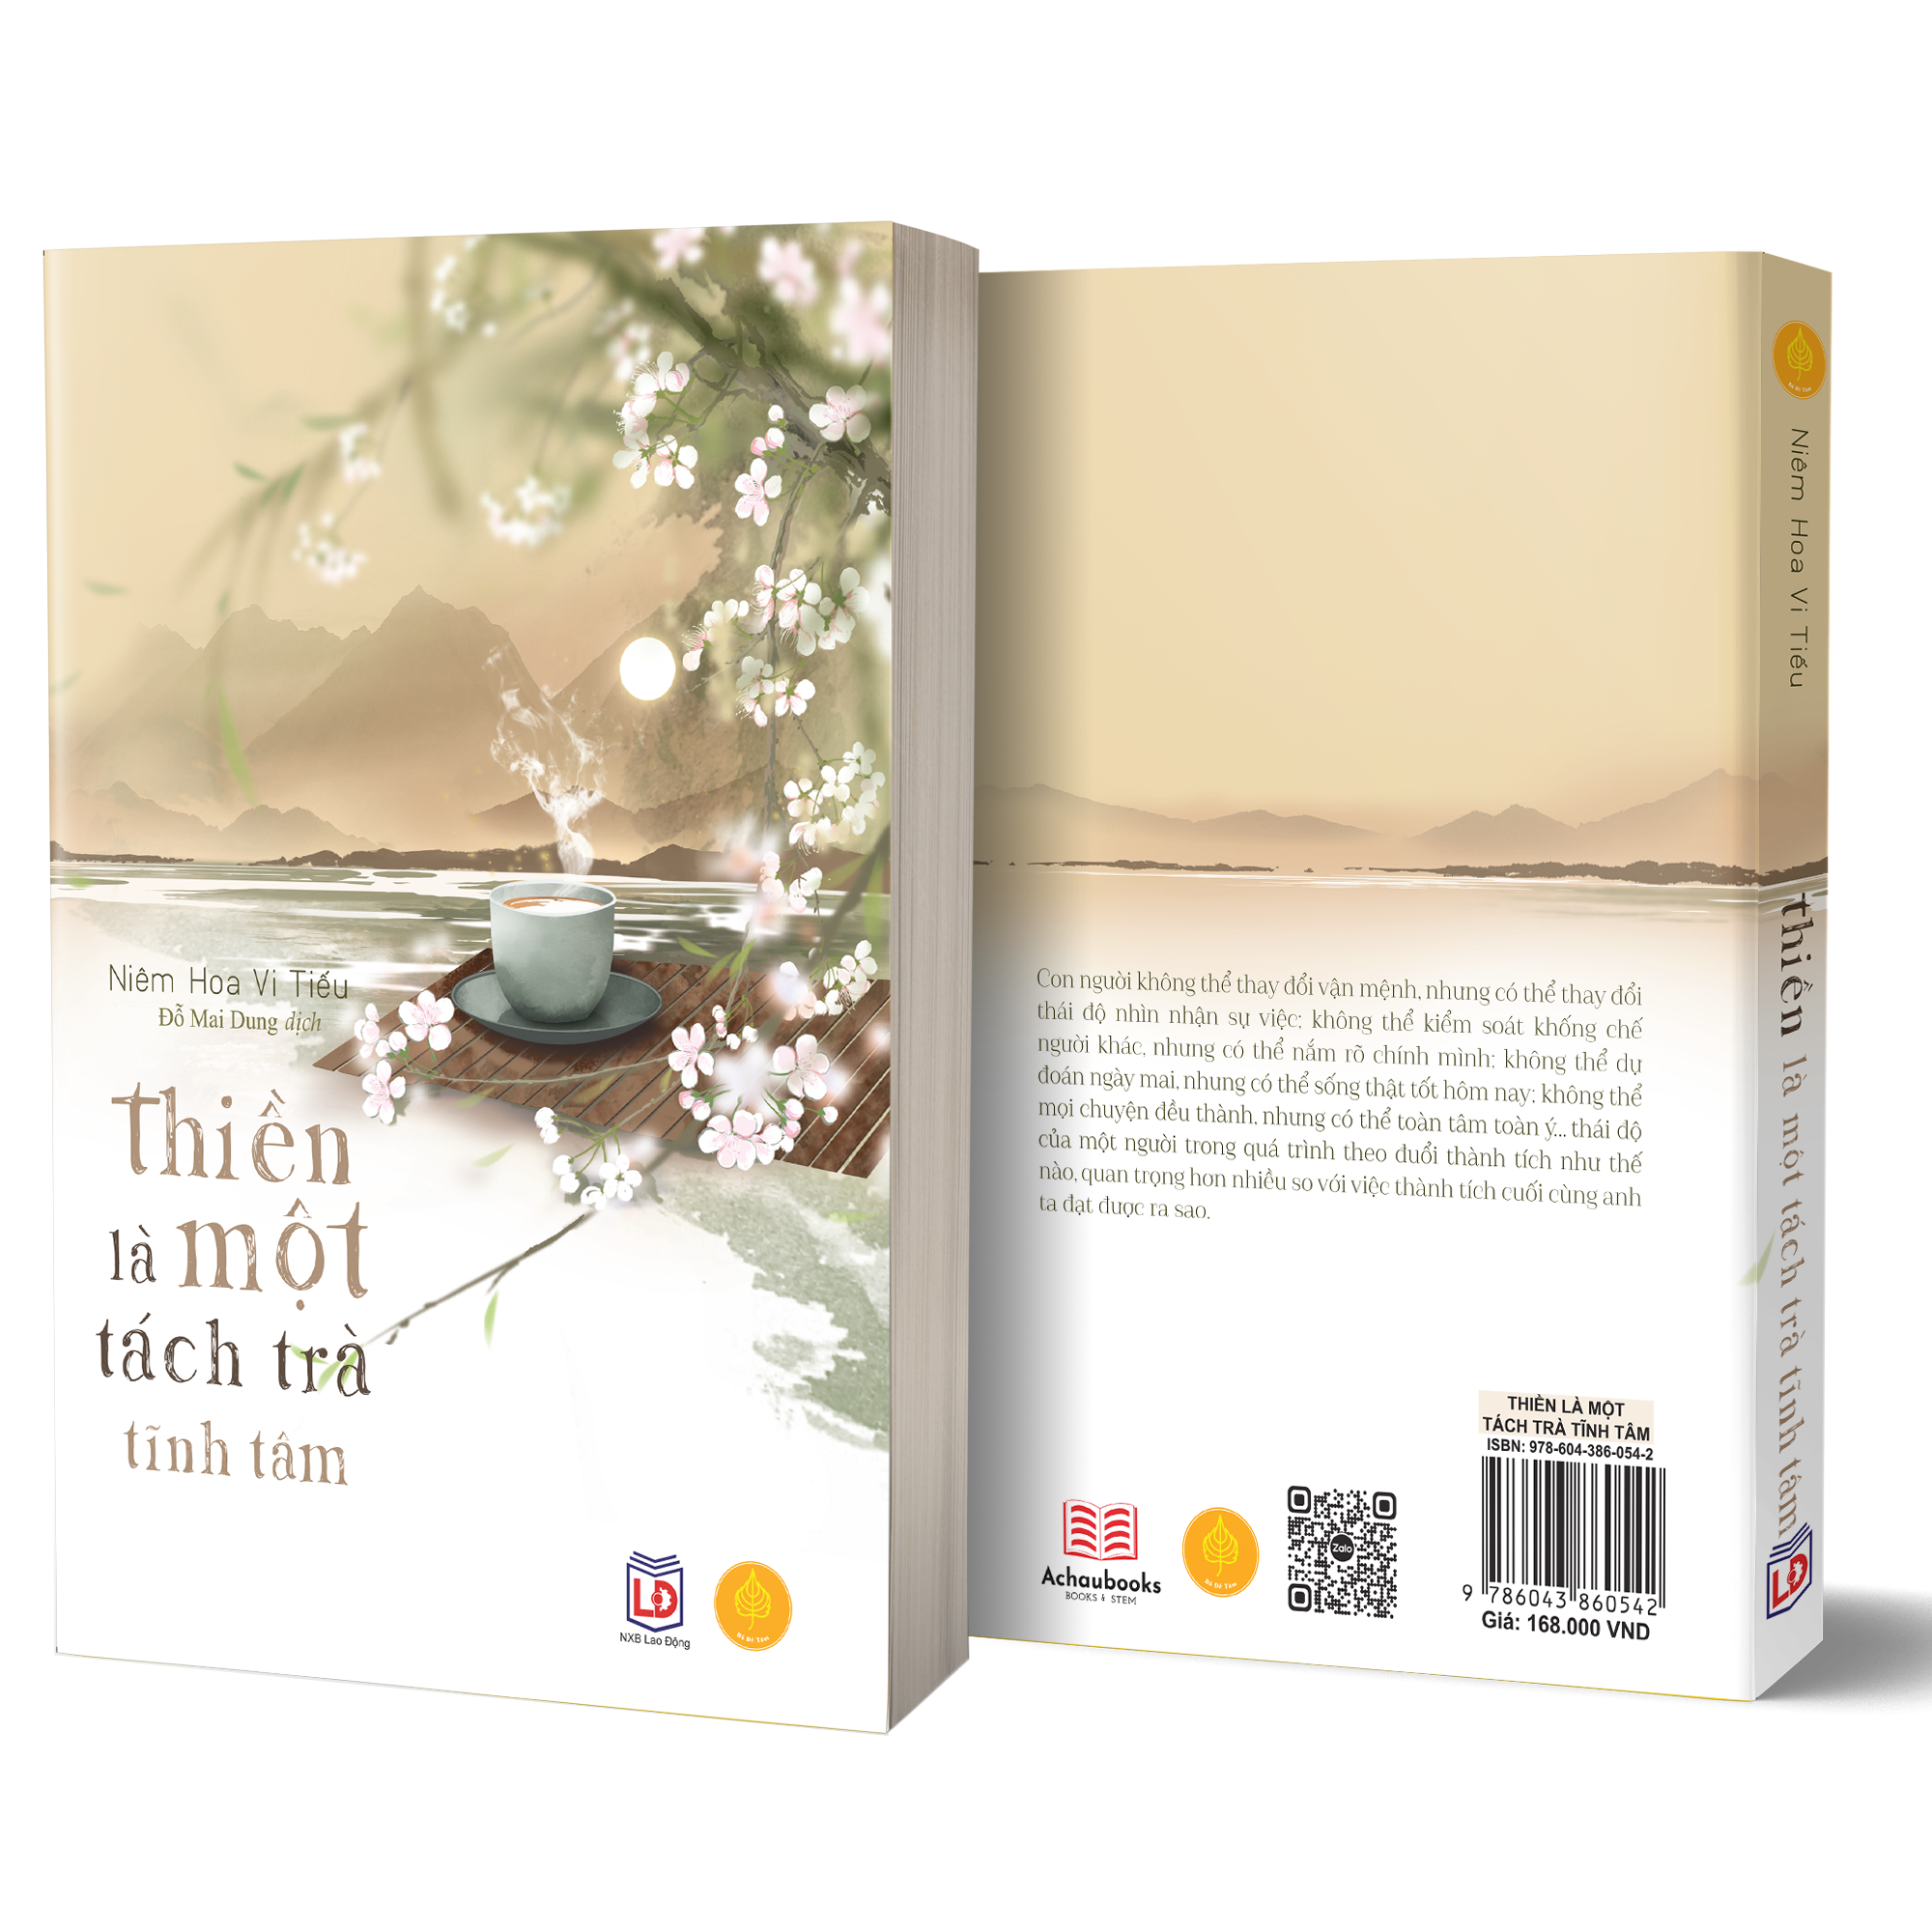 Sách Thiền Là Một Tách Trà Tĩnh Tâm - Tác Giả Niêm Hoa Vi Tiếu - Á Châu Books, Bìa Mềm, In Màu